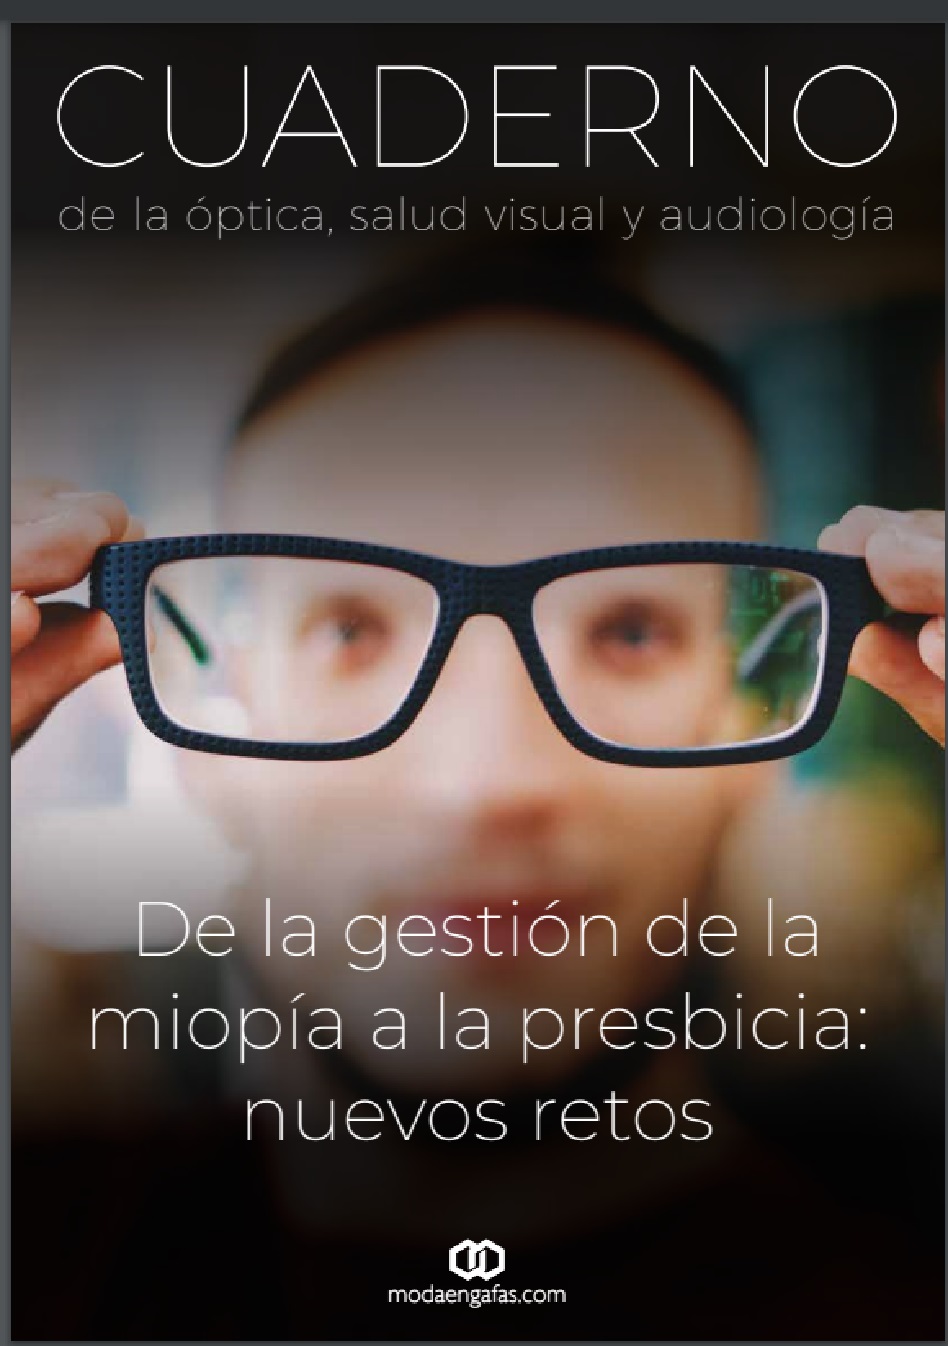 portada del nuevo Cuaderno de Salud Visual editado por Modaengafas.com sobre la gestión de la miopía y la presbicia